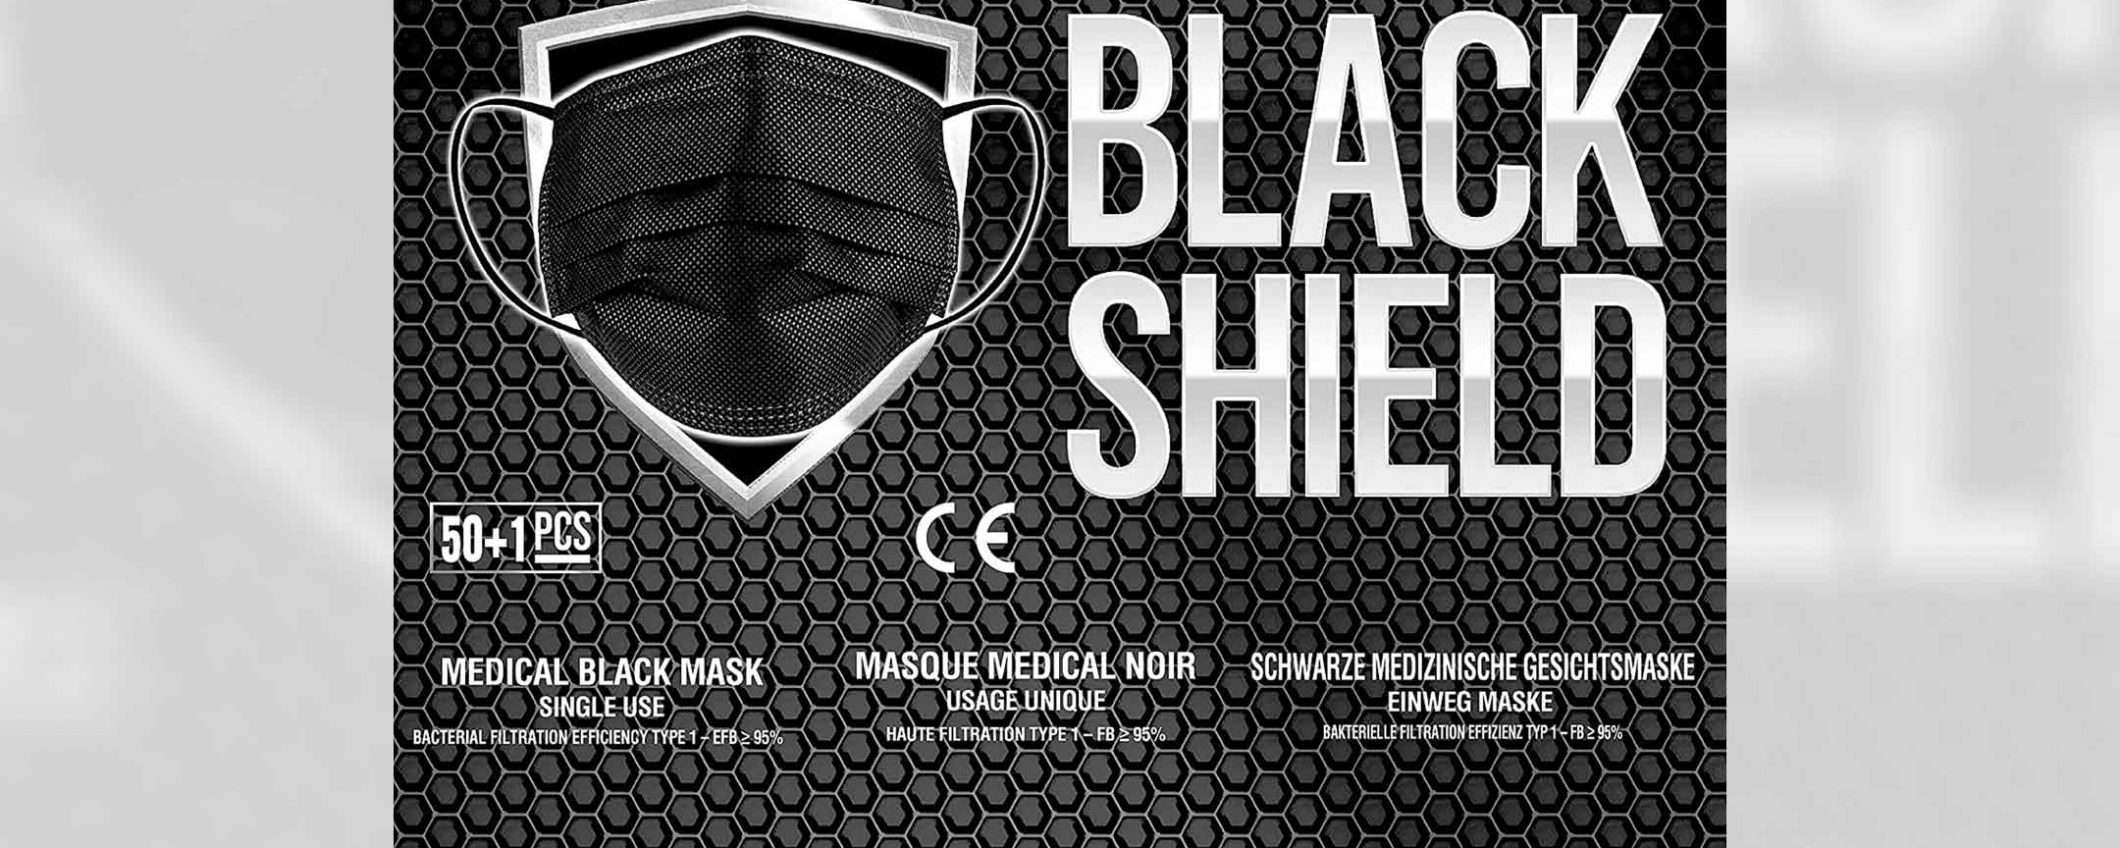 50 mascherine chirurgiche Black Shield in offerta